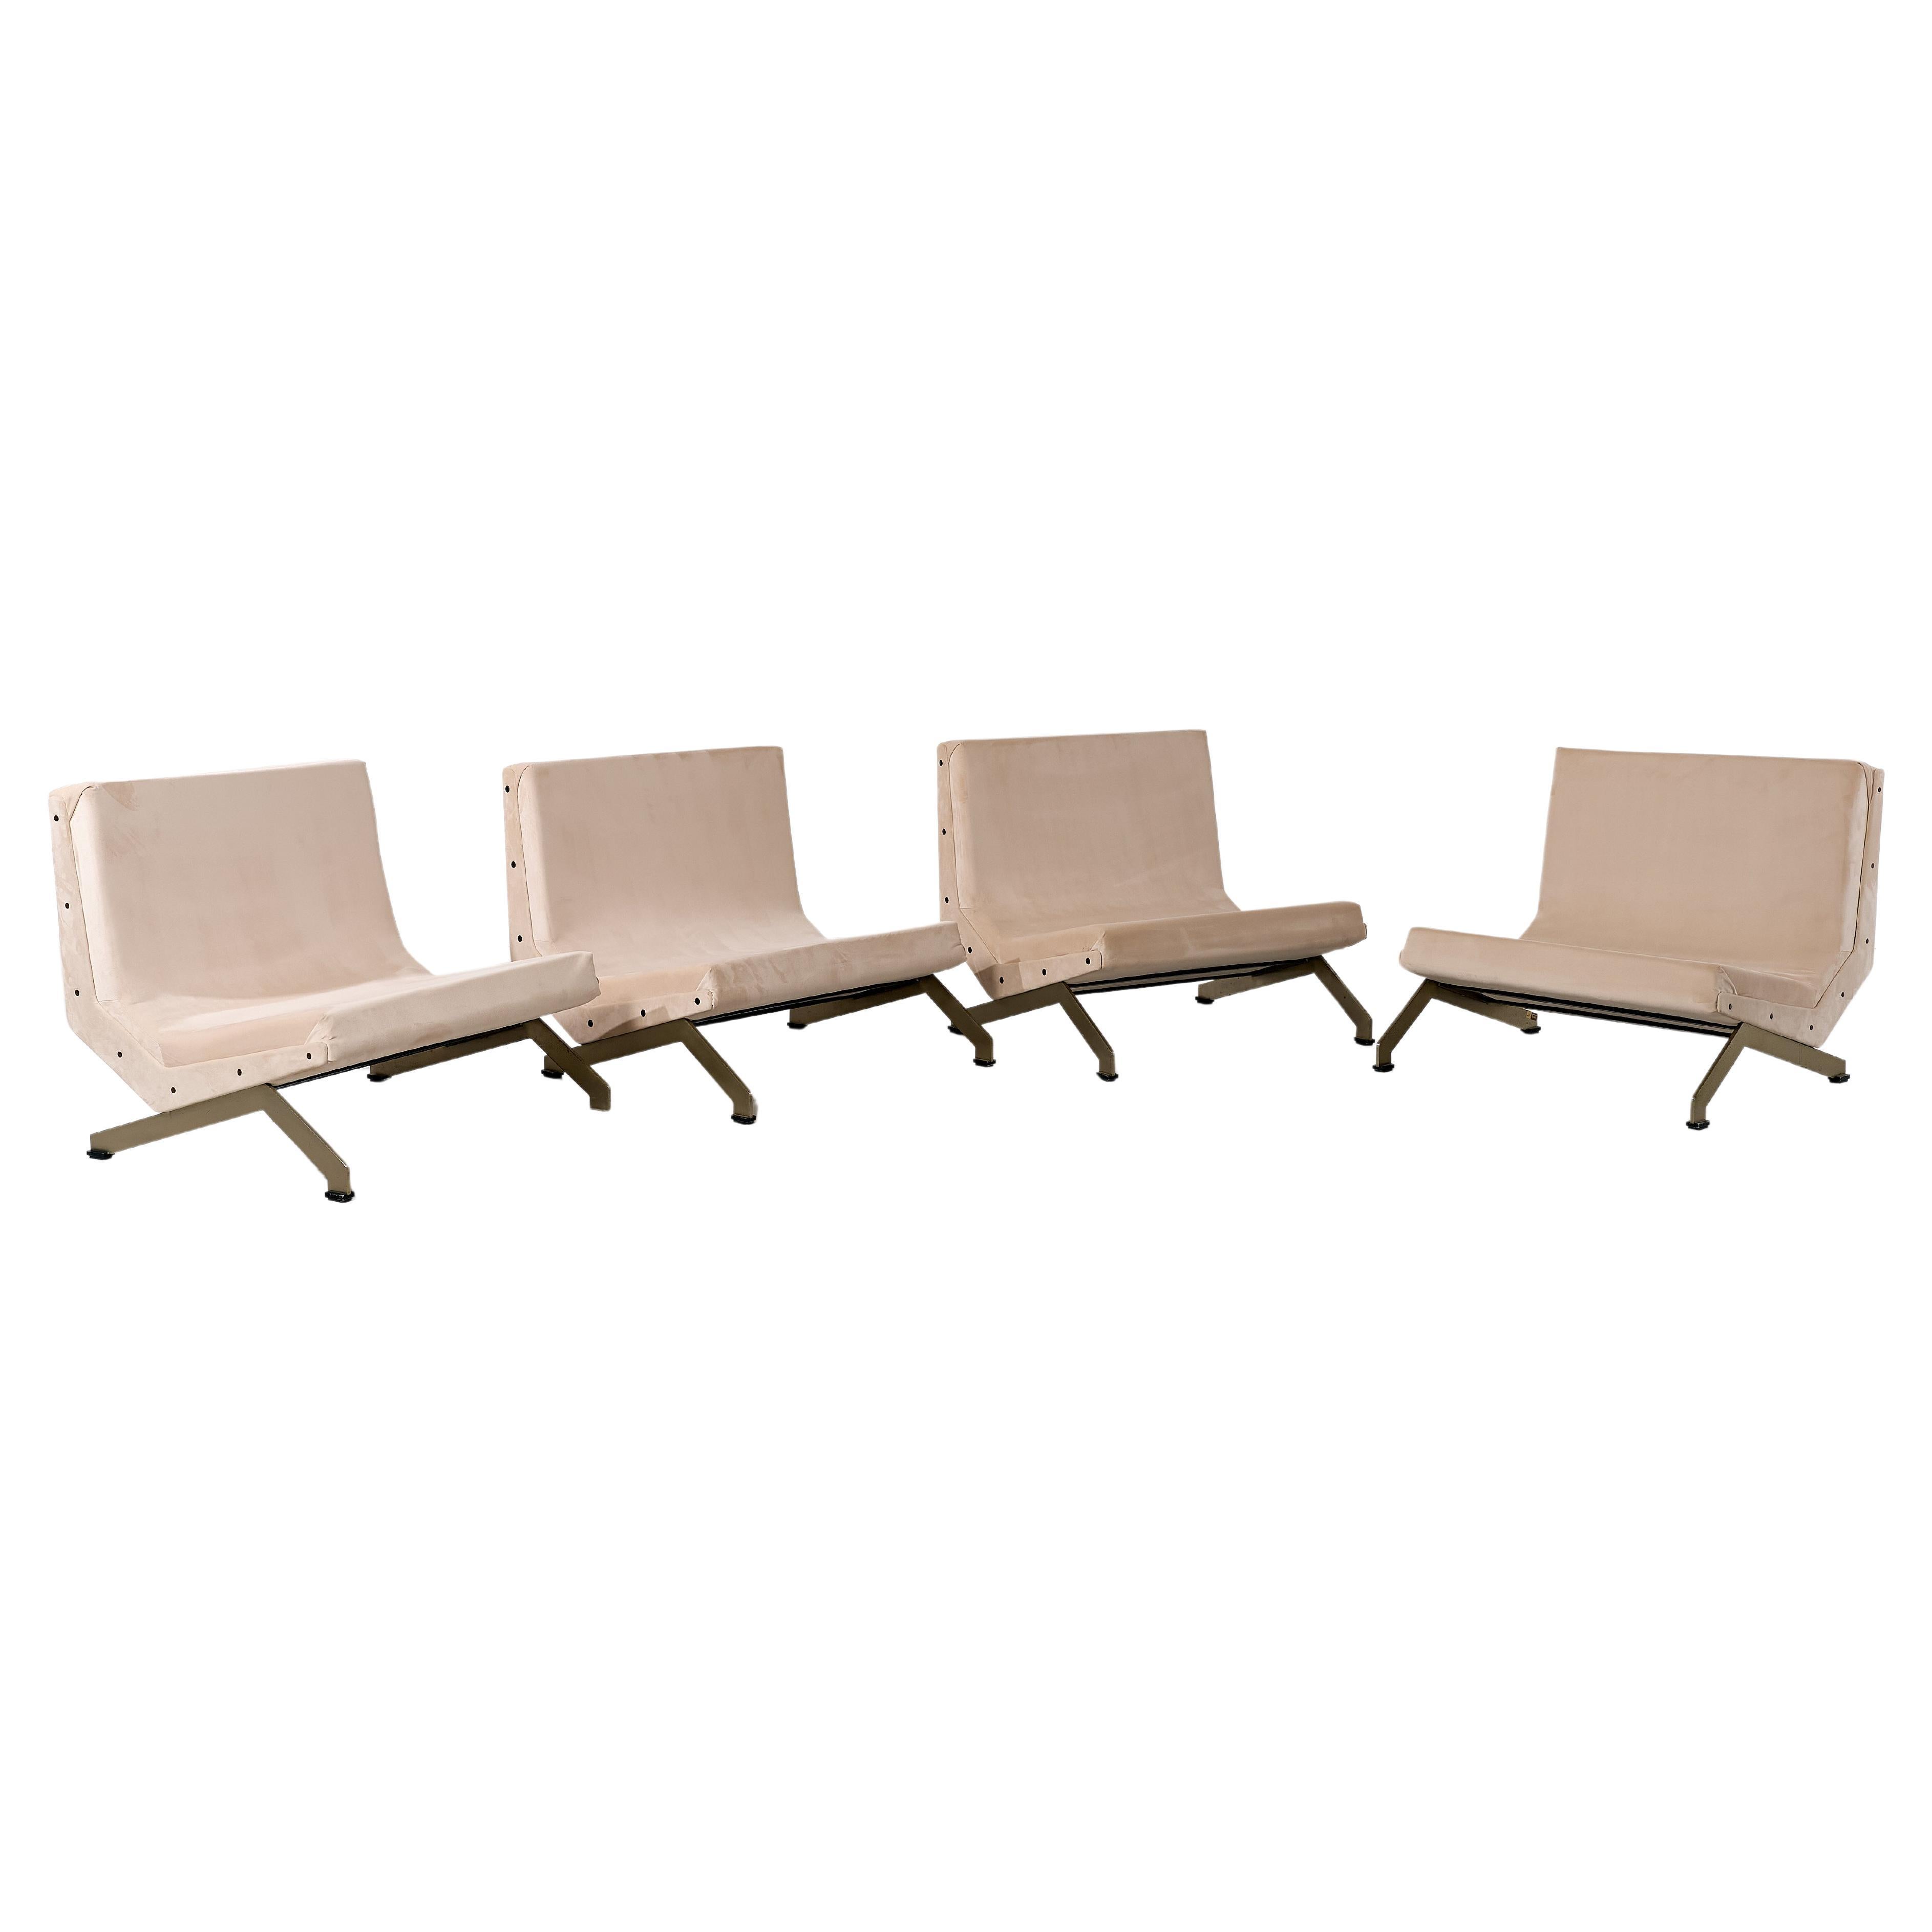 Formanova Lounge Chairs